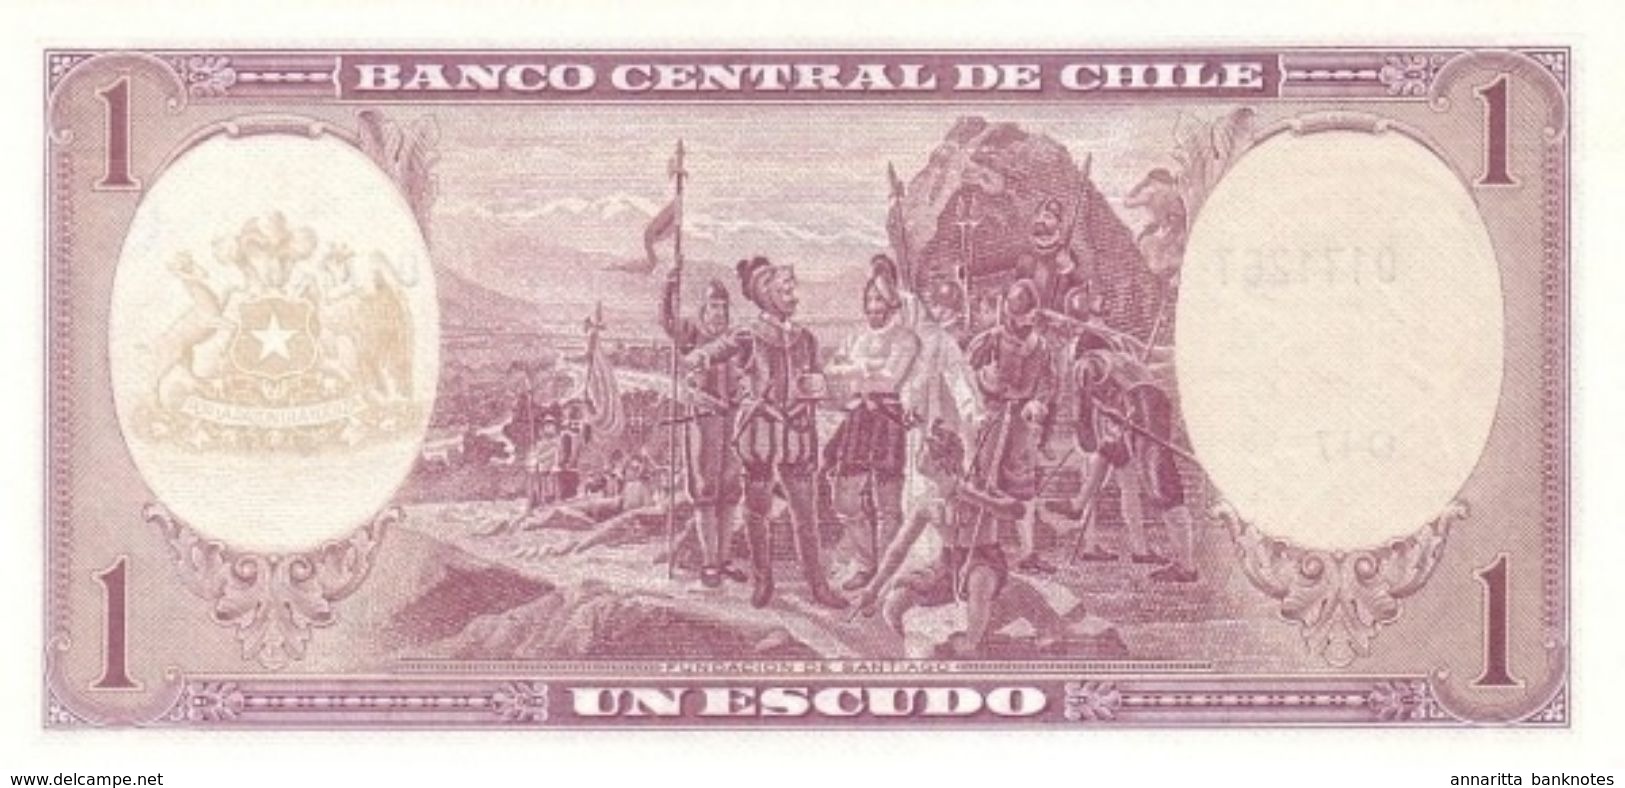 CHILE 1 ESCUDO ND (1964) P-136a UNC SIGN. MASSAD & IBANEZ [CL271a] - Chile